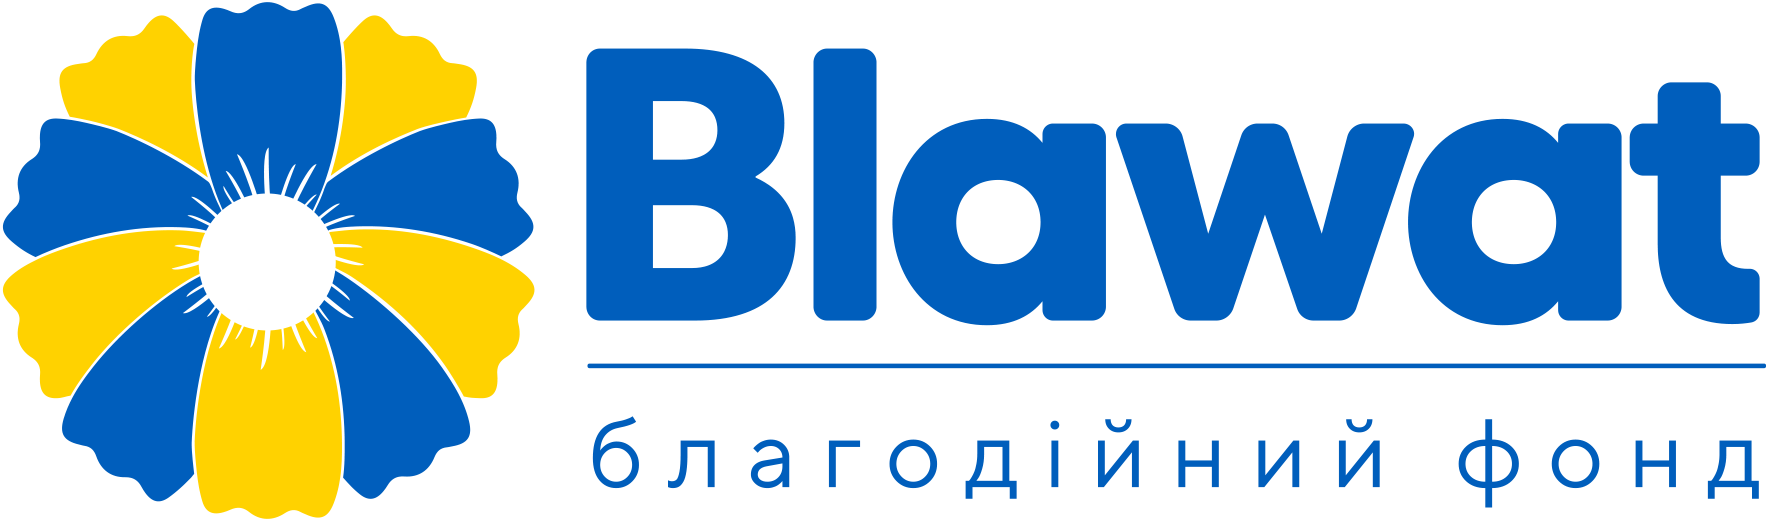 Blawat - благодійний фонд